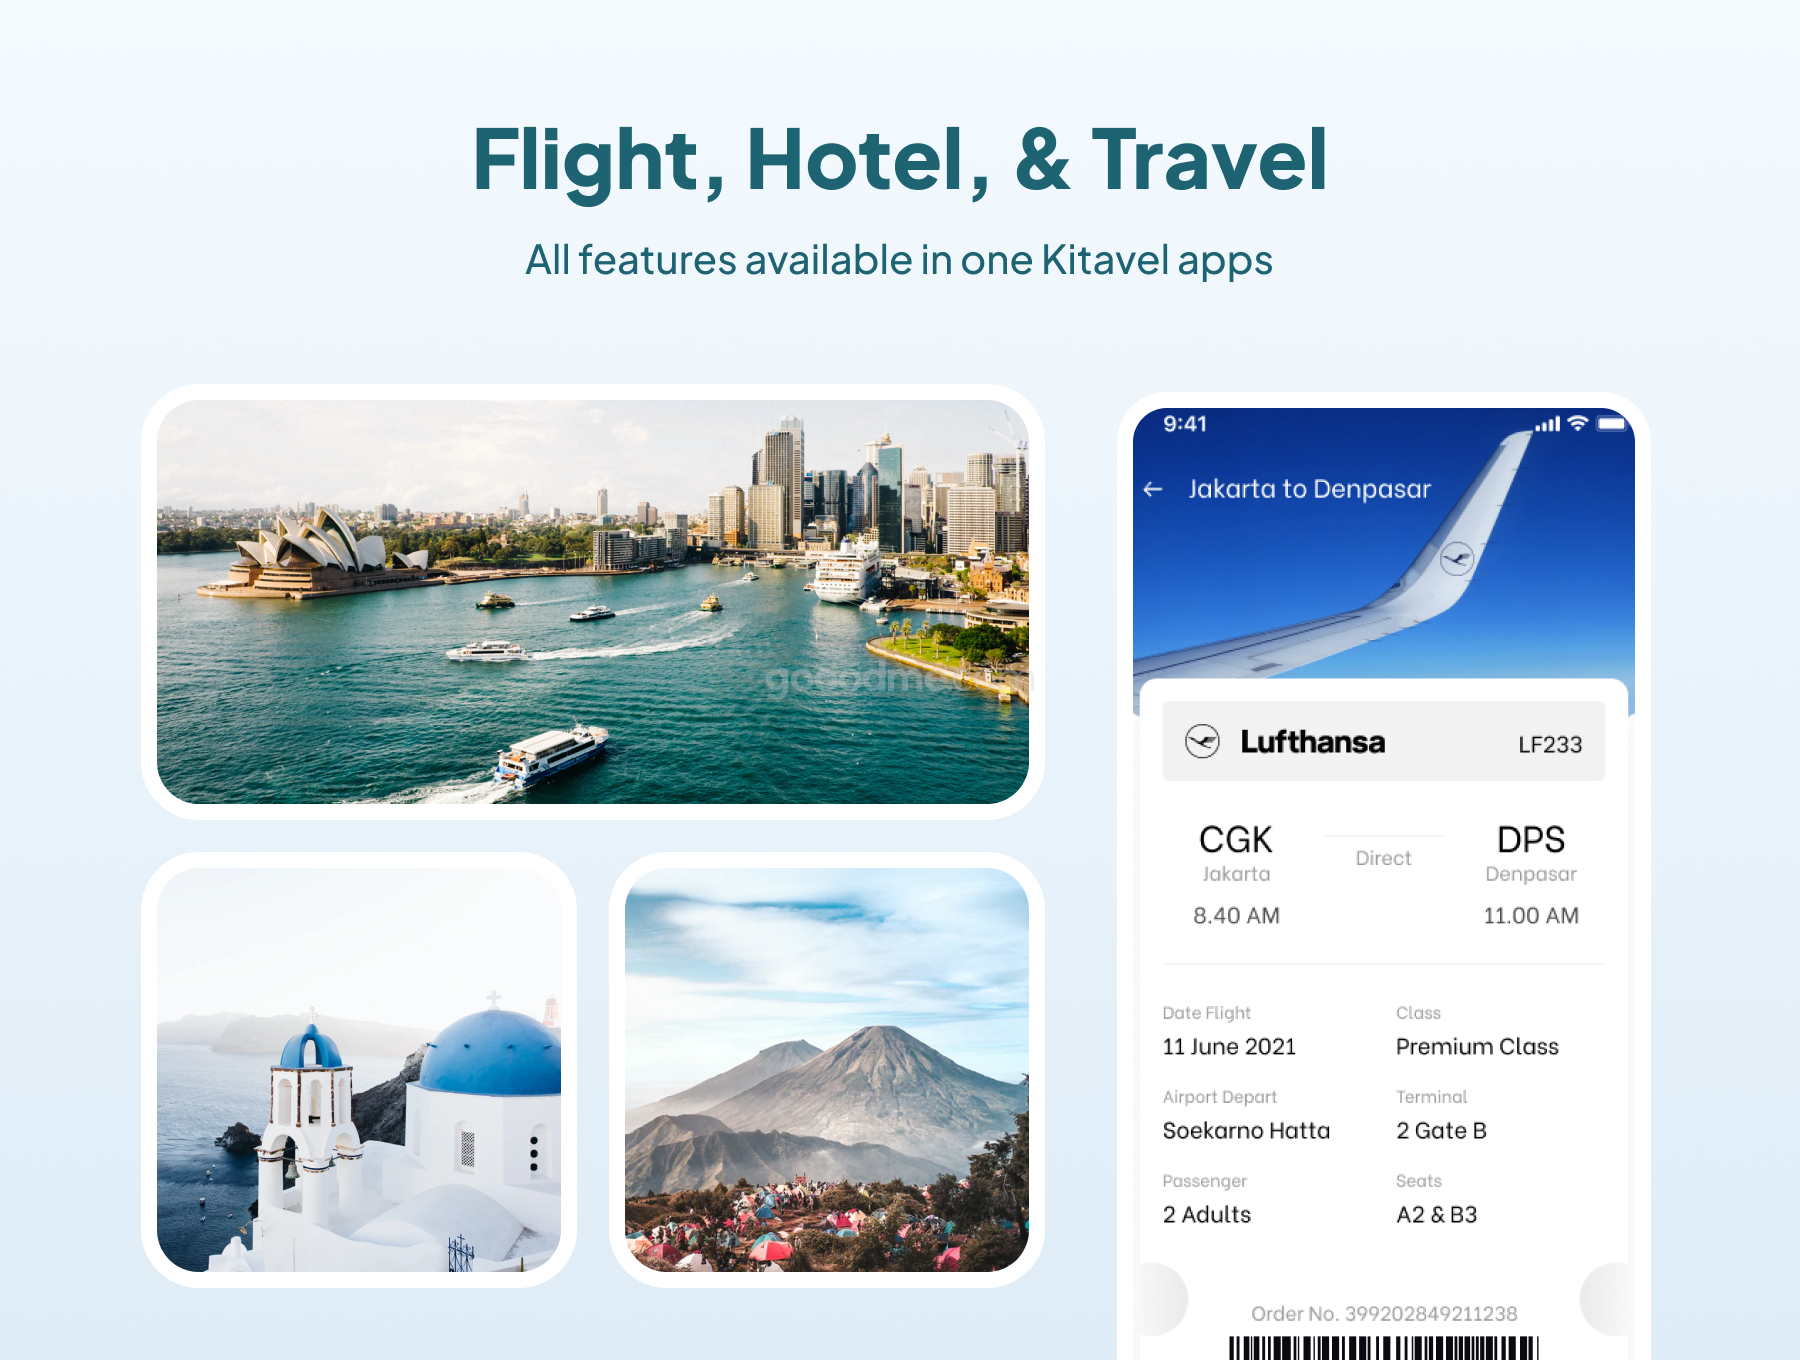 完整的航班、酒店和旅行应用 UI 套件包Kitavel – Premium Flight, Hotel & Travel App UI Kit